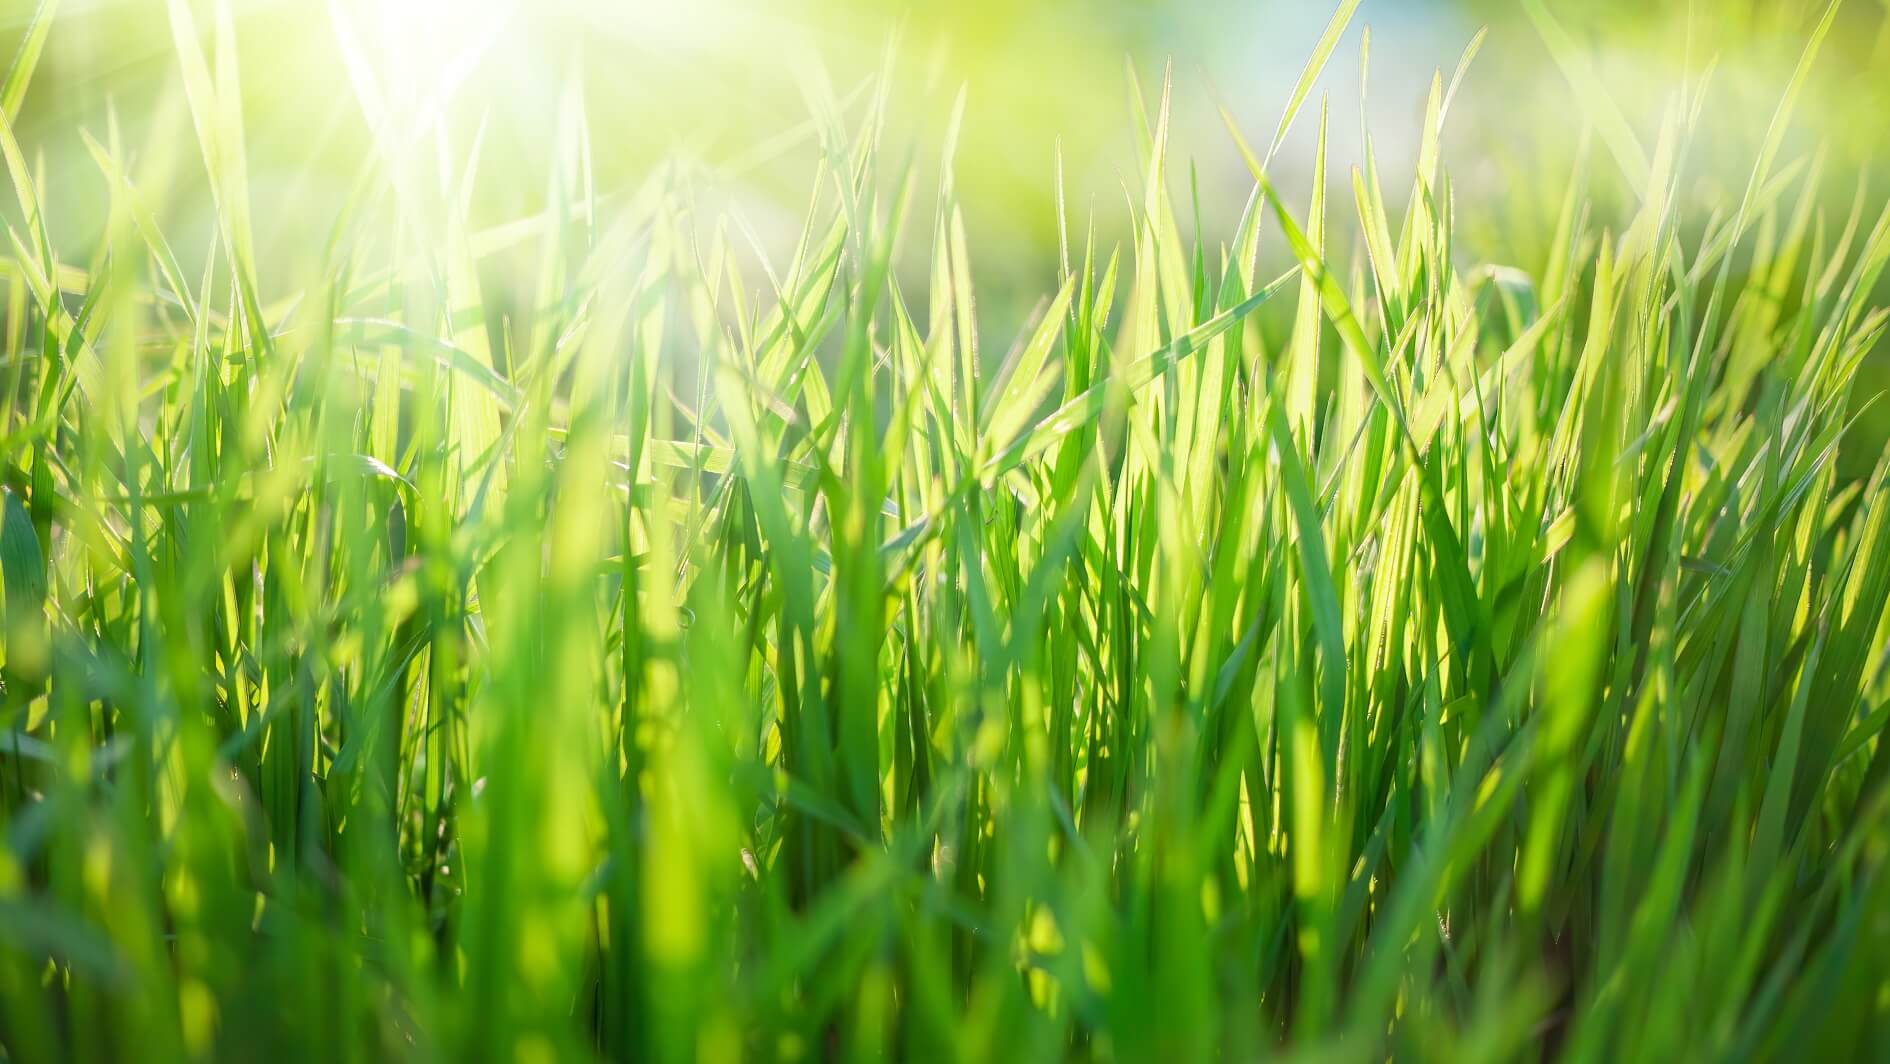 A close-up of green grass